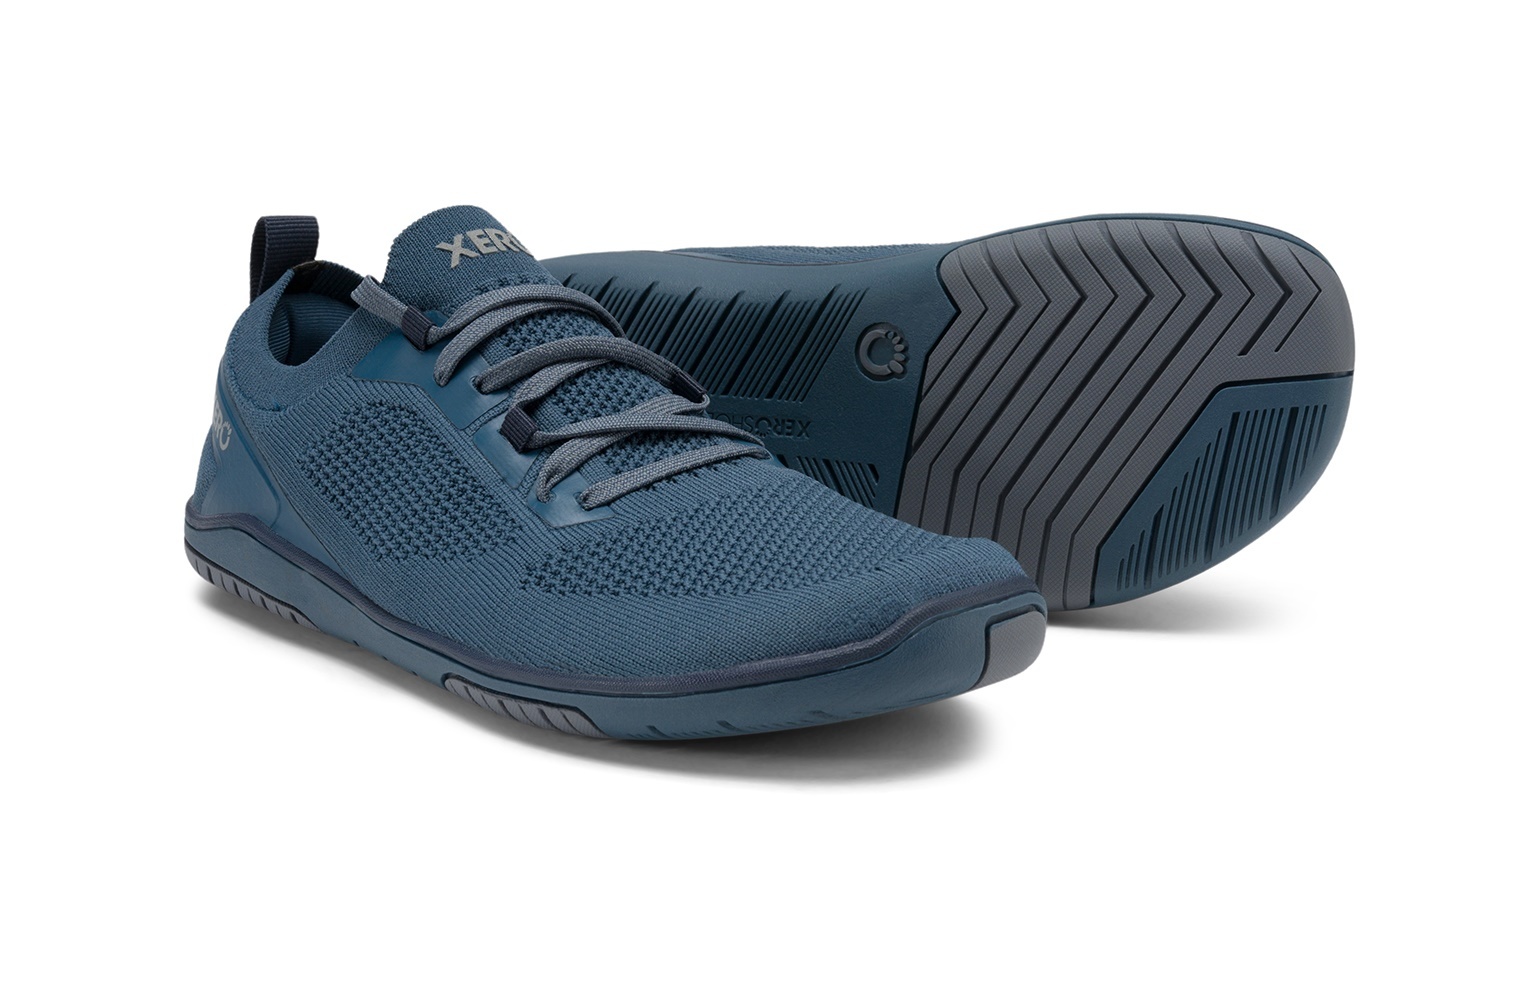 Xero Shoes, Nexus Knit - NEXW-ONBU - orion blue, dames, maat 38,5 eu